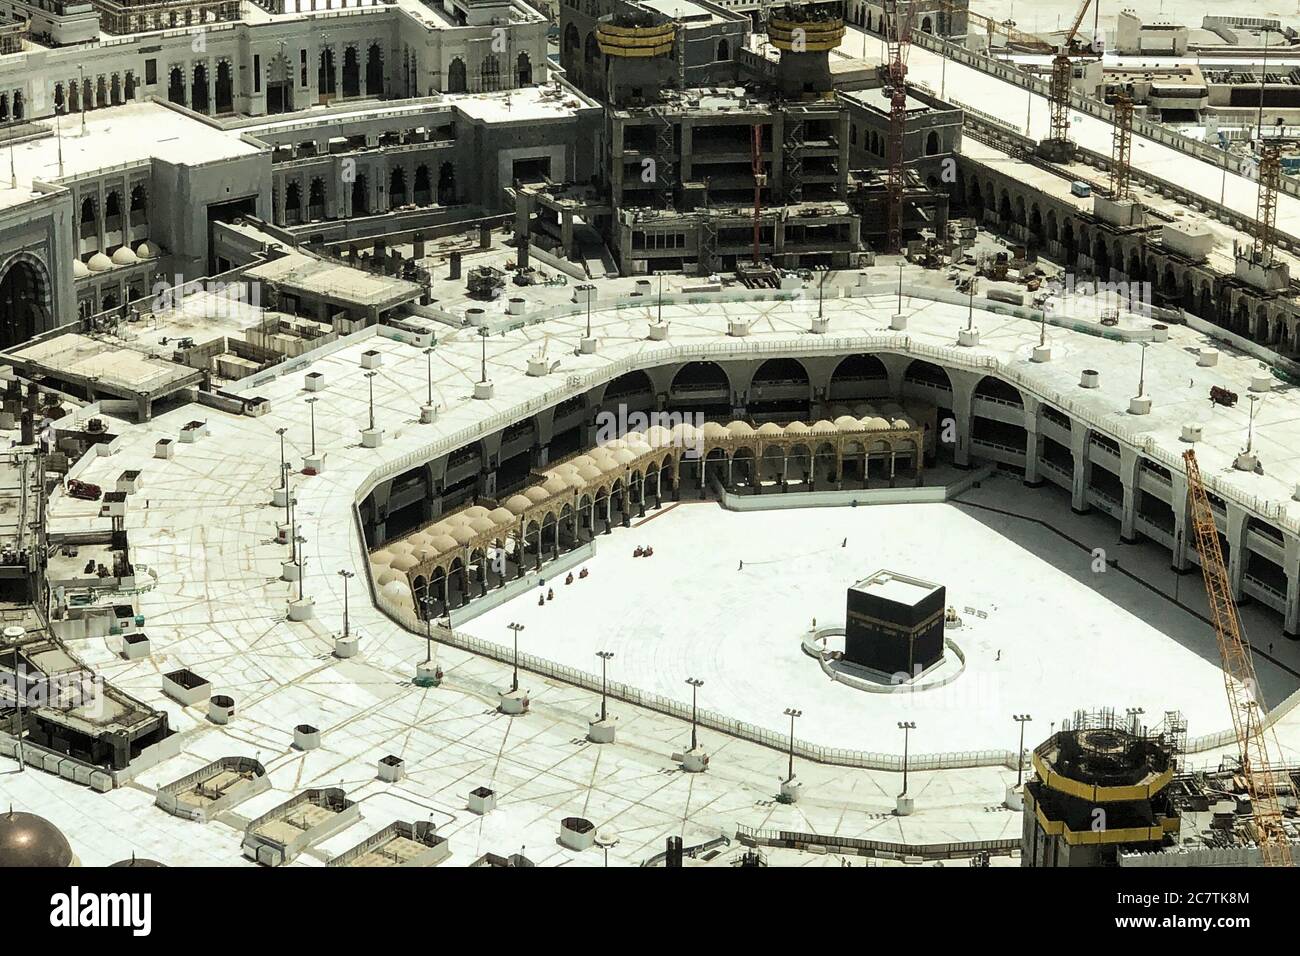 Meca, Arabia Saudita. 19 de julio de 2020. Una vista general sobre la Gran Mezquita vacía de la Meca (al-Masjid al-Haram), el lugar más sagrado del Islam que alberga la peregrinación anual del Hajj. El Ministerio de Hajj y Umrah de Arabia Saudita ha anunciado que la peregrinación de este año tendrá lugar "con un número muy limitado" de personas que ya residen en Arabia Saudita. Crédito: Islam Marey/dpa/Alamy Live News Foto de stock